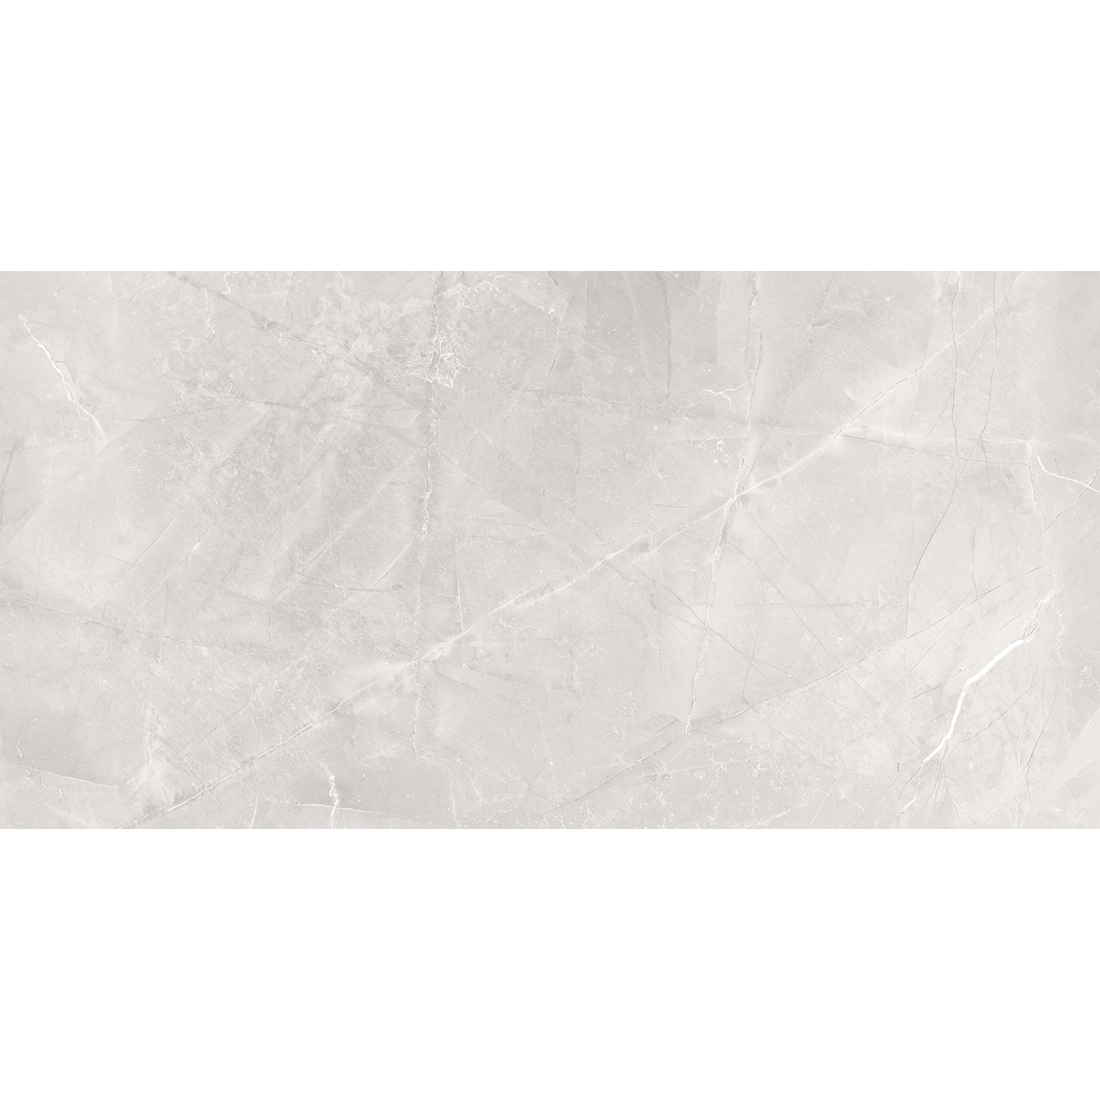 Dazzle Elegant Armani 30x60 Silver Gloss 1